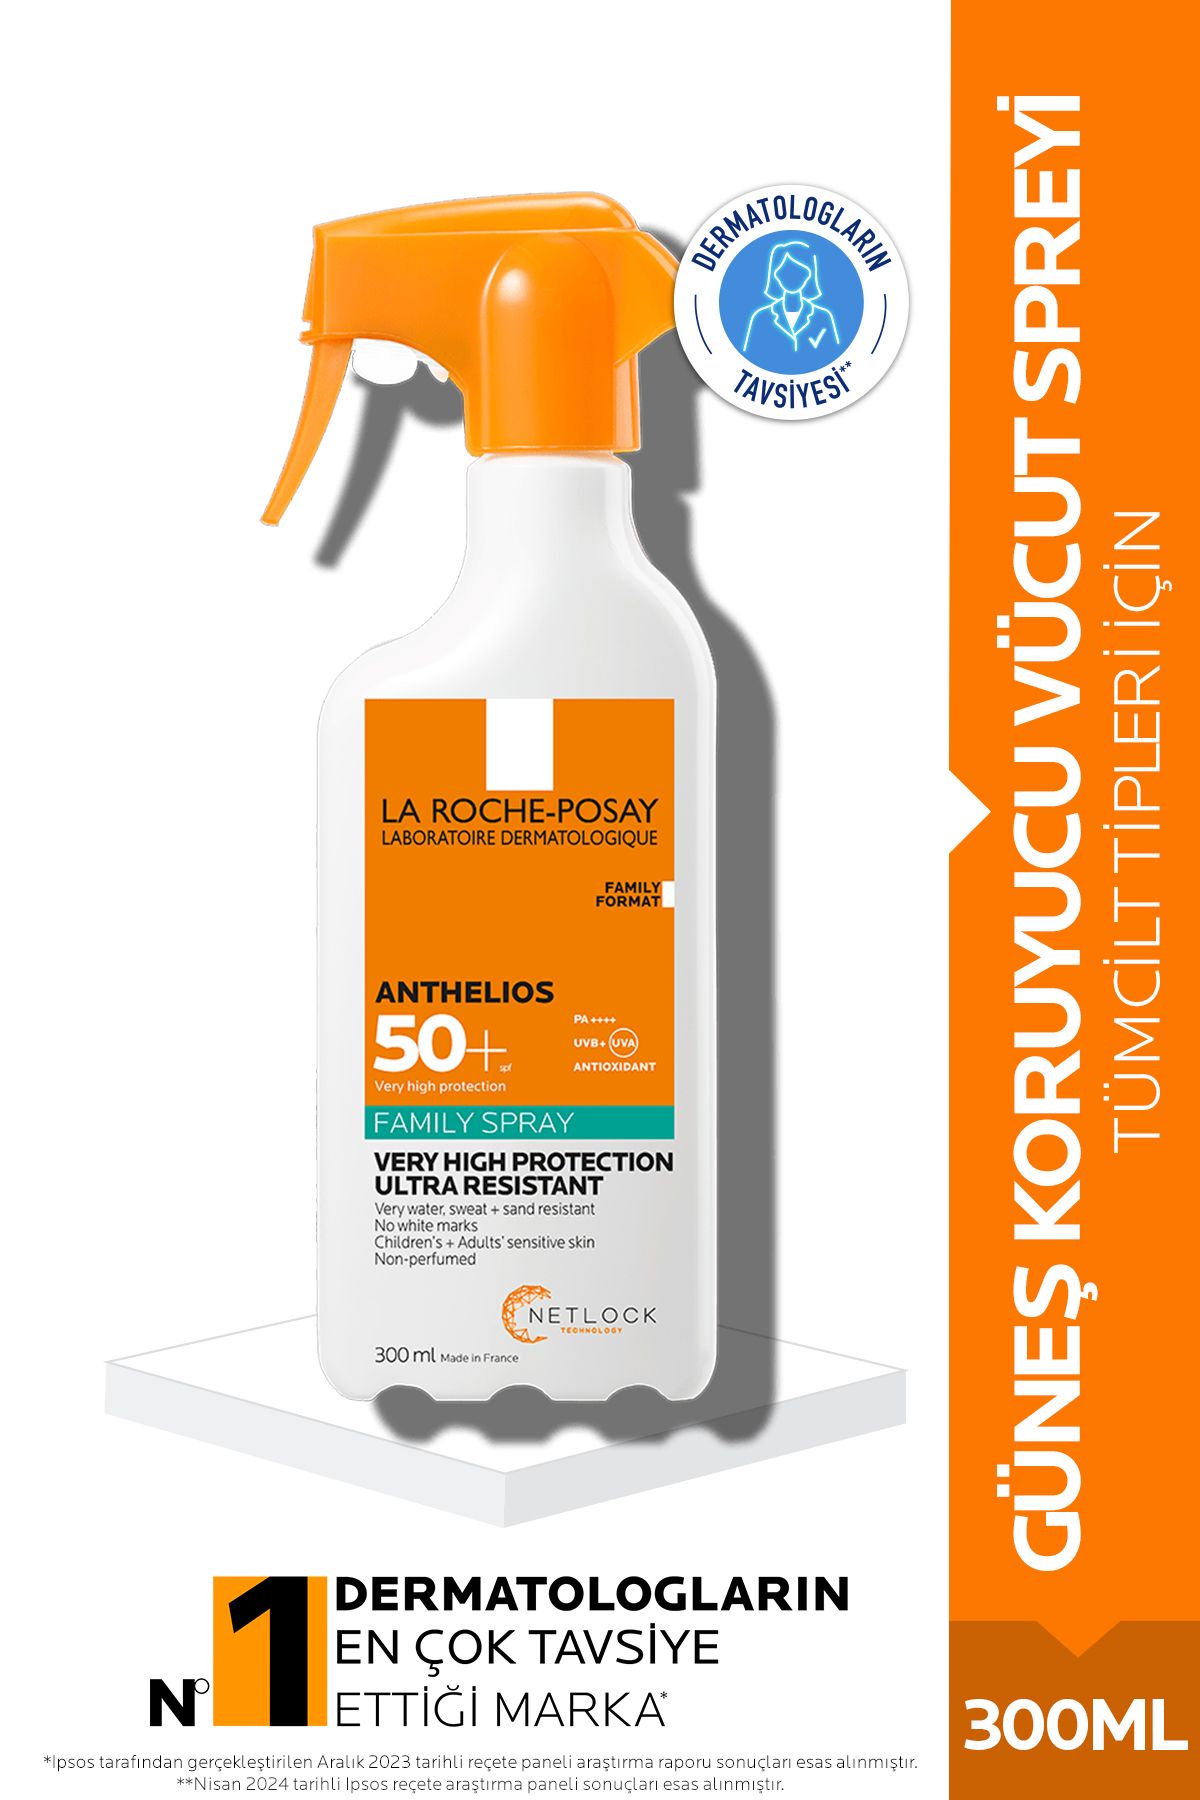 La Roche Posay Anthelios Family Spray Spf+50 Tüm Cilt Tipleri Için Vücut Güneş Kremi